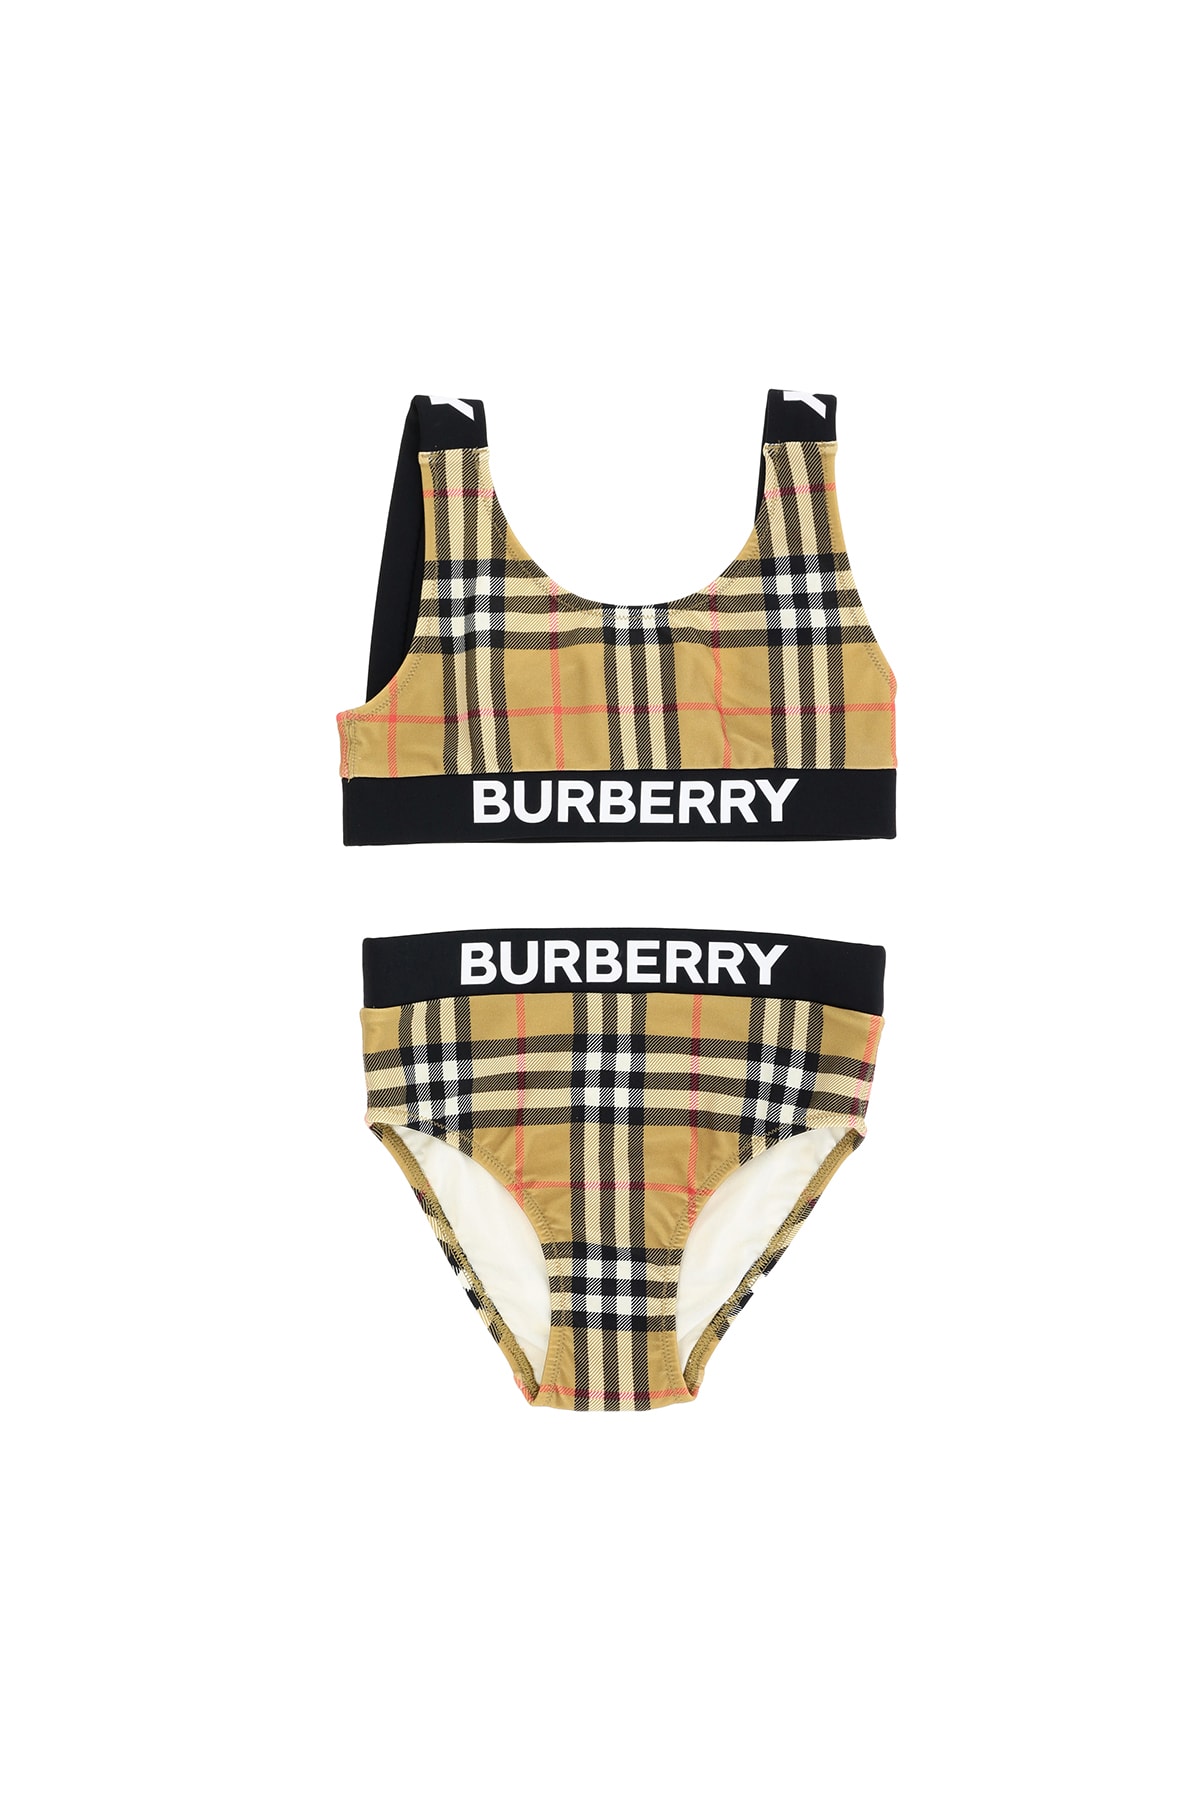 burberry swimsuit kids sale